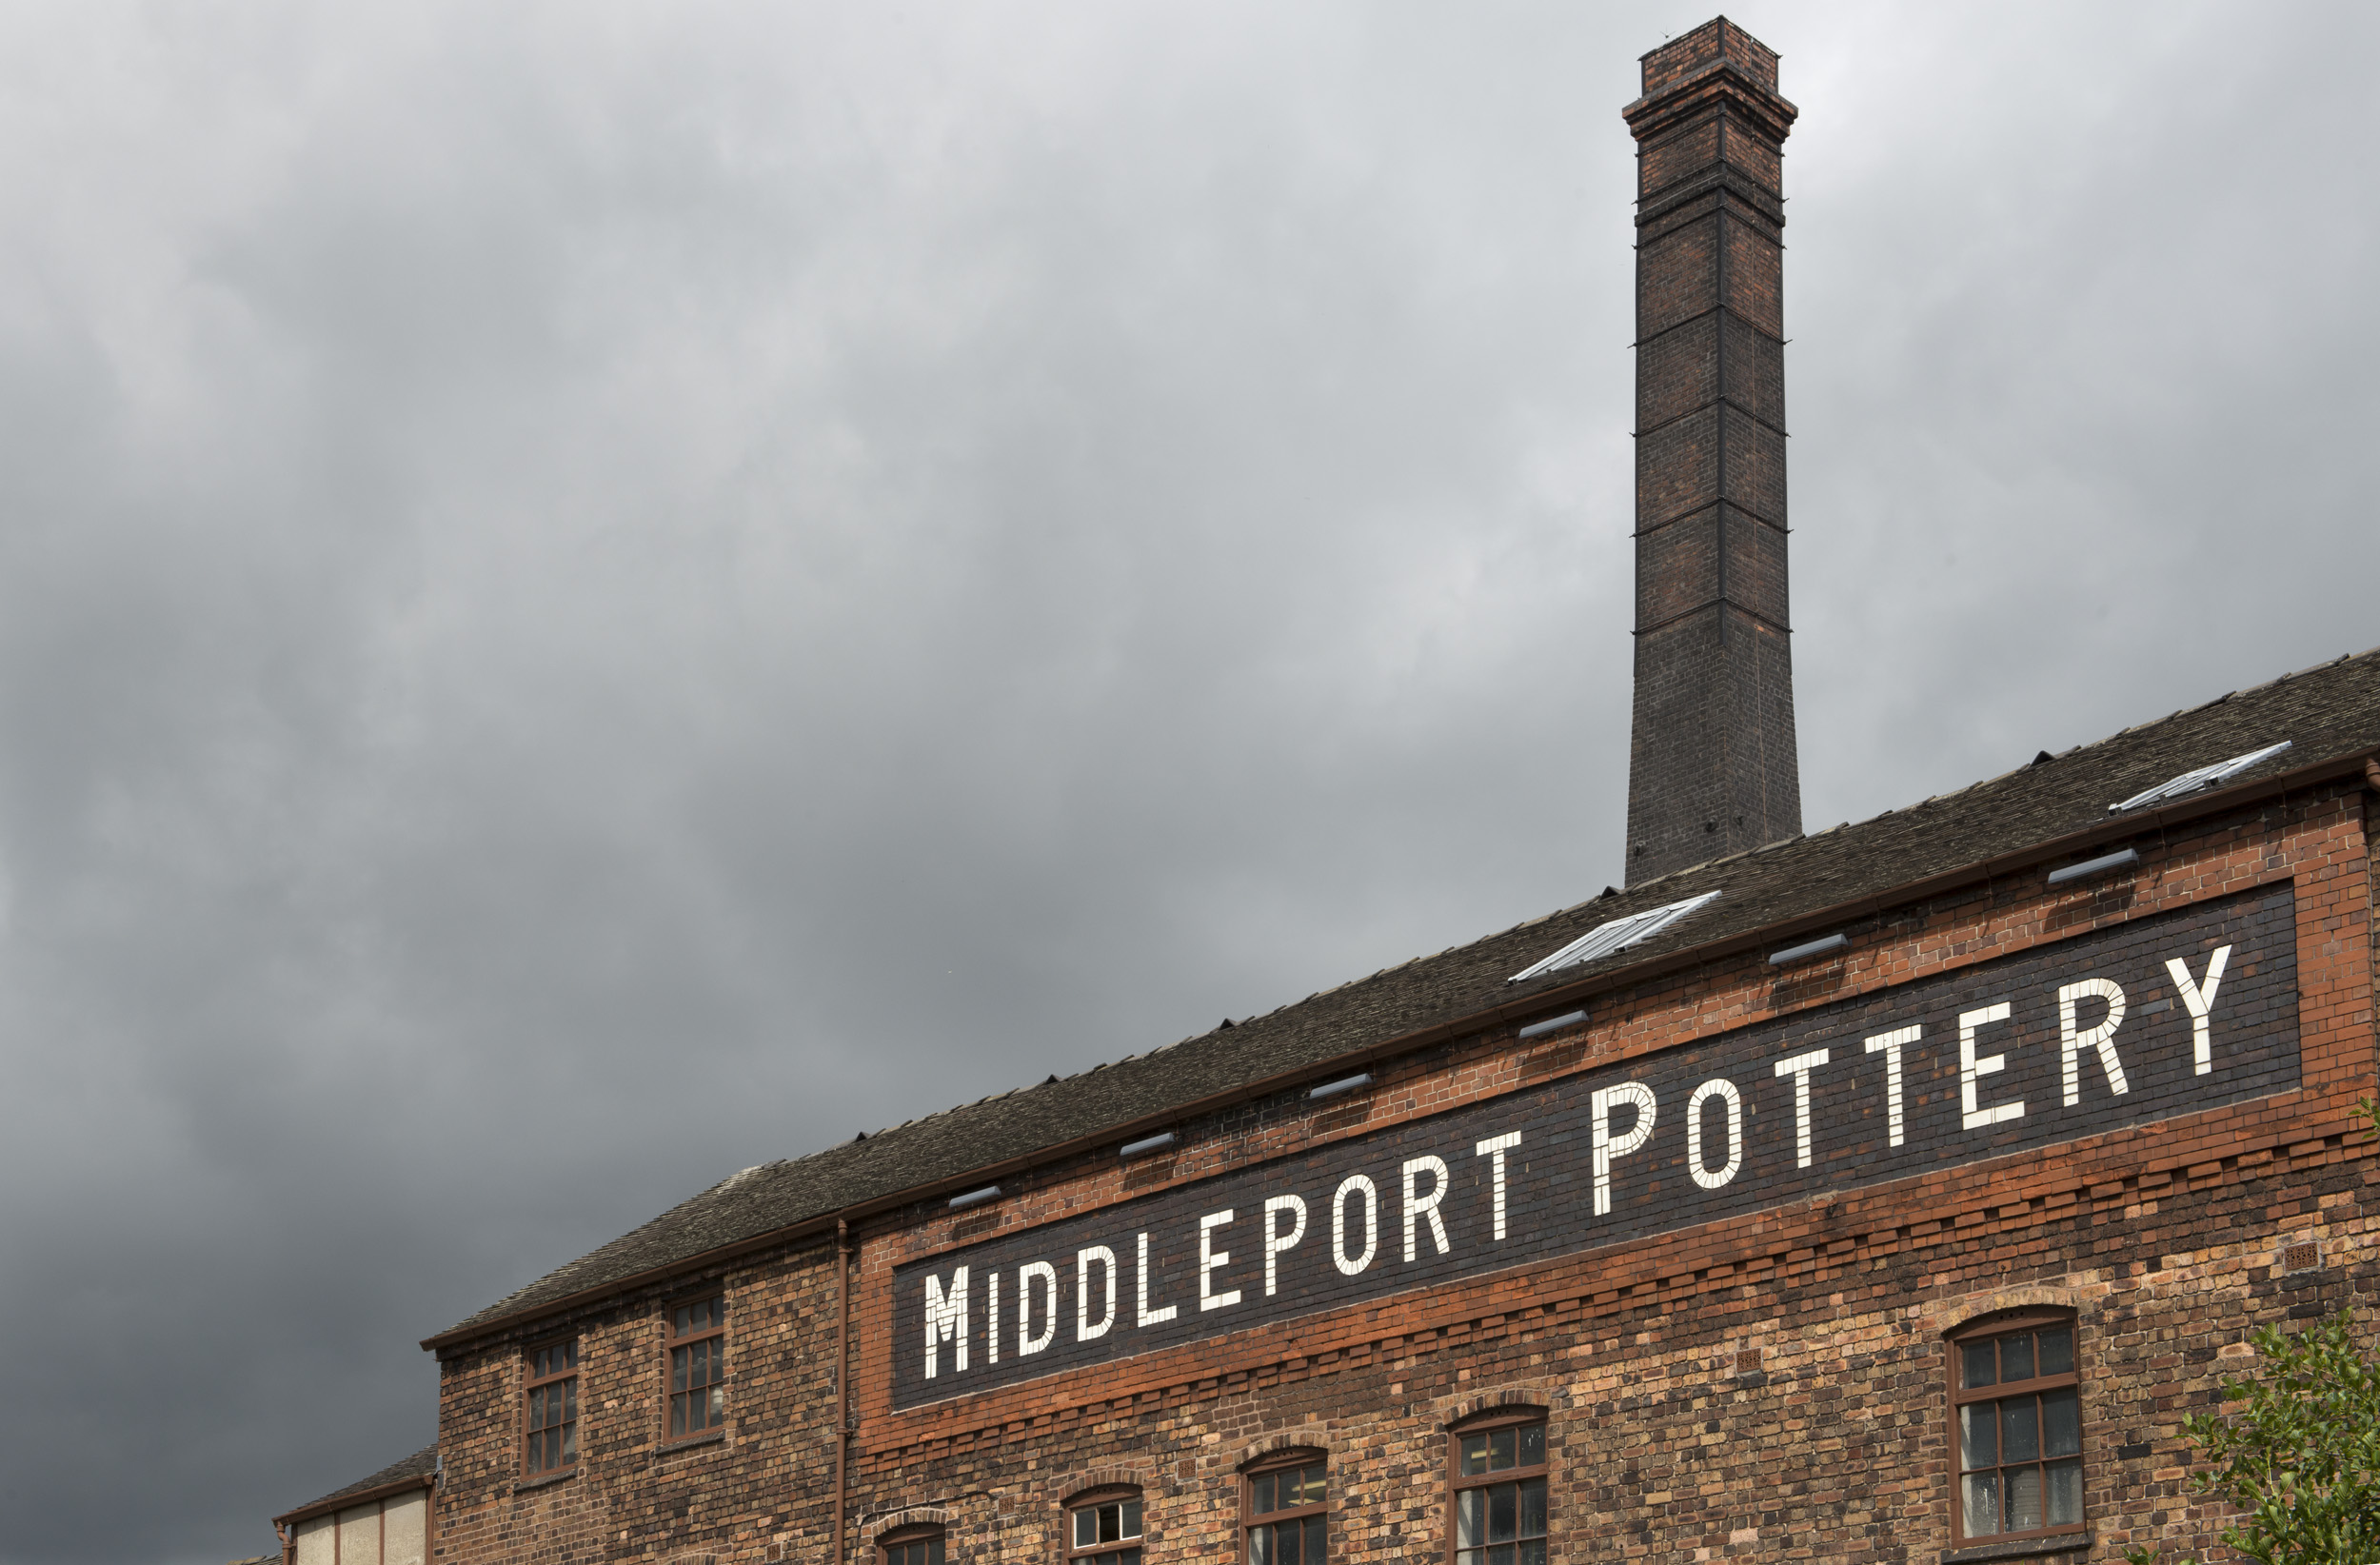 Middelport pottery, Stoke on Trent